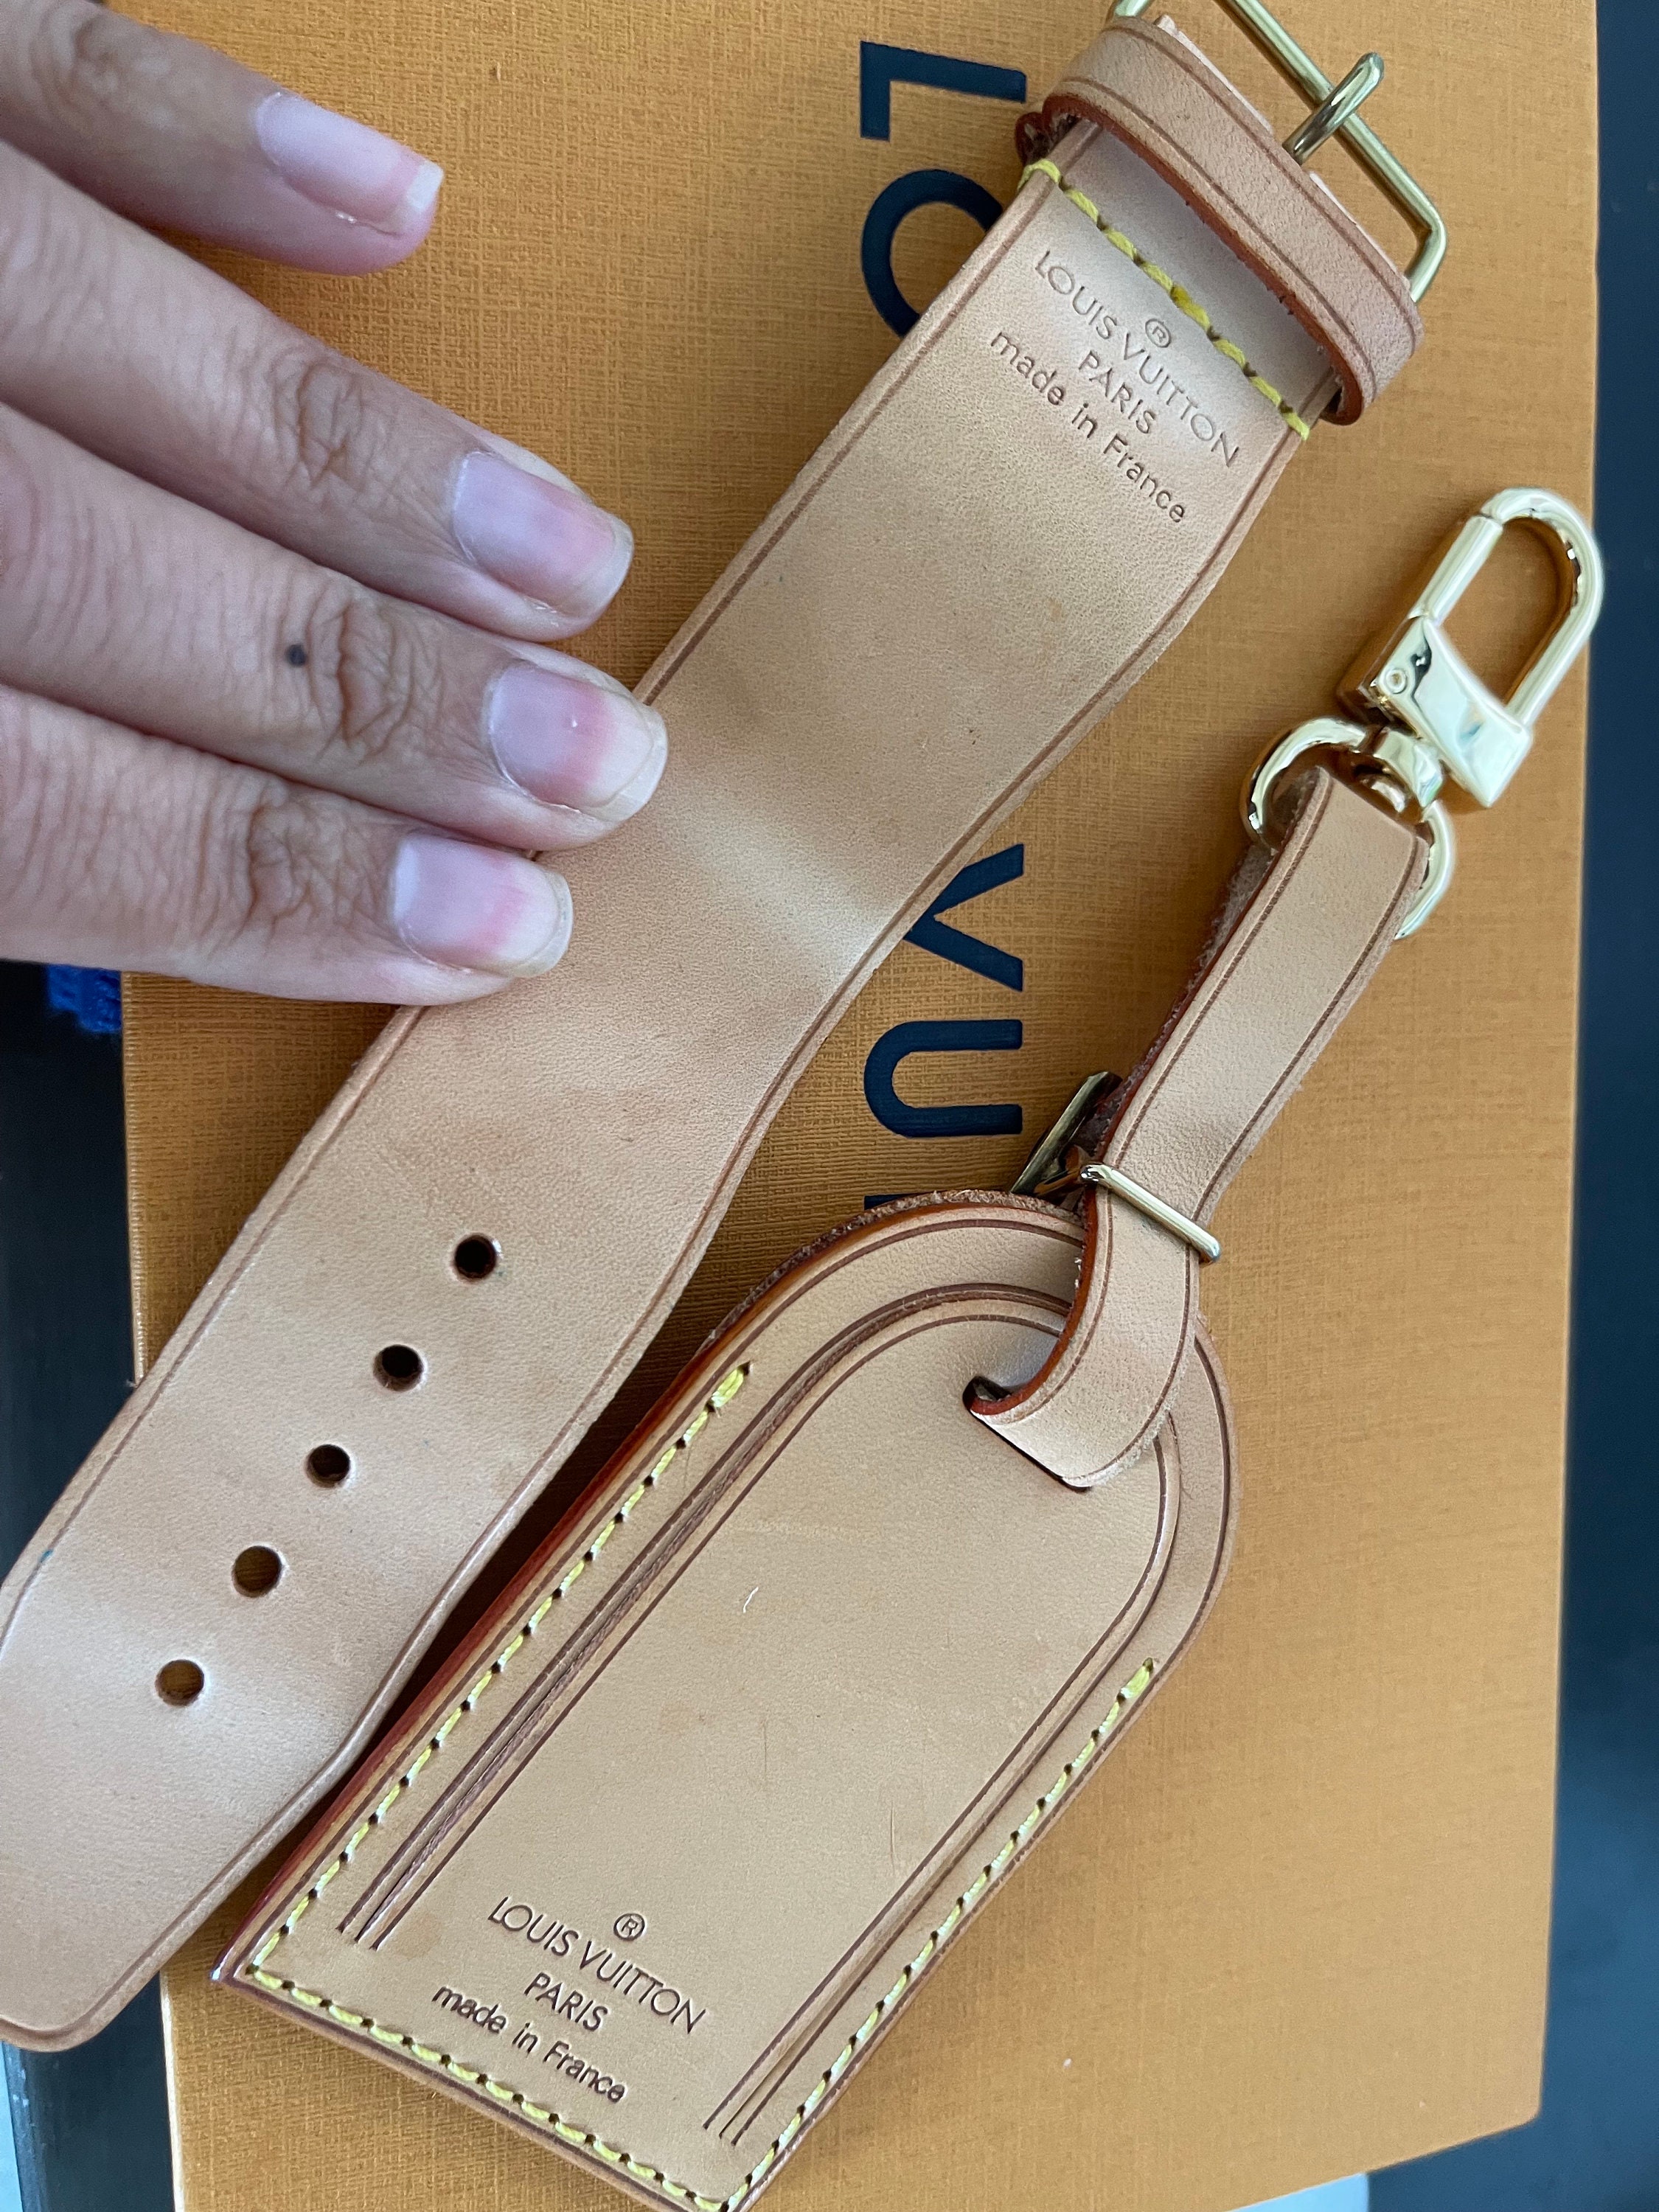 Louis Vuitton, Accessories, Louis Vuitton Vachetta Leather Money Clip